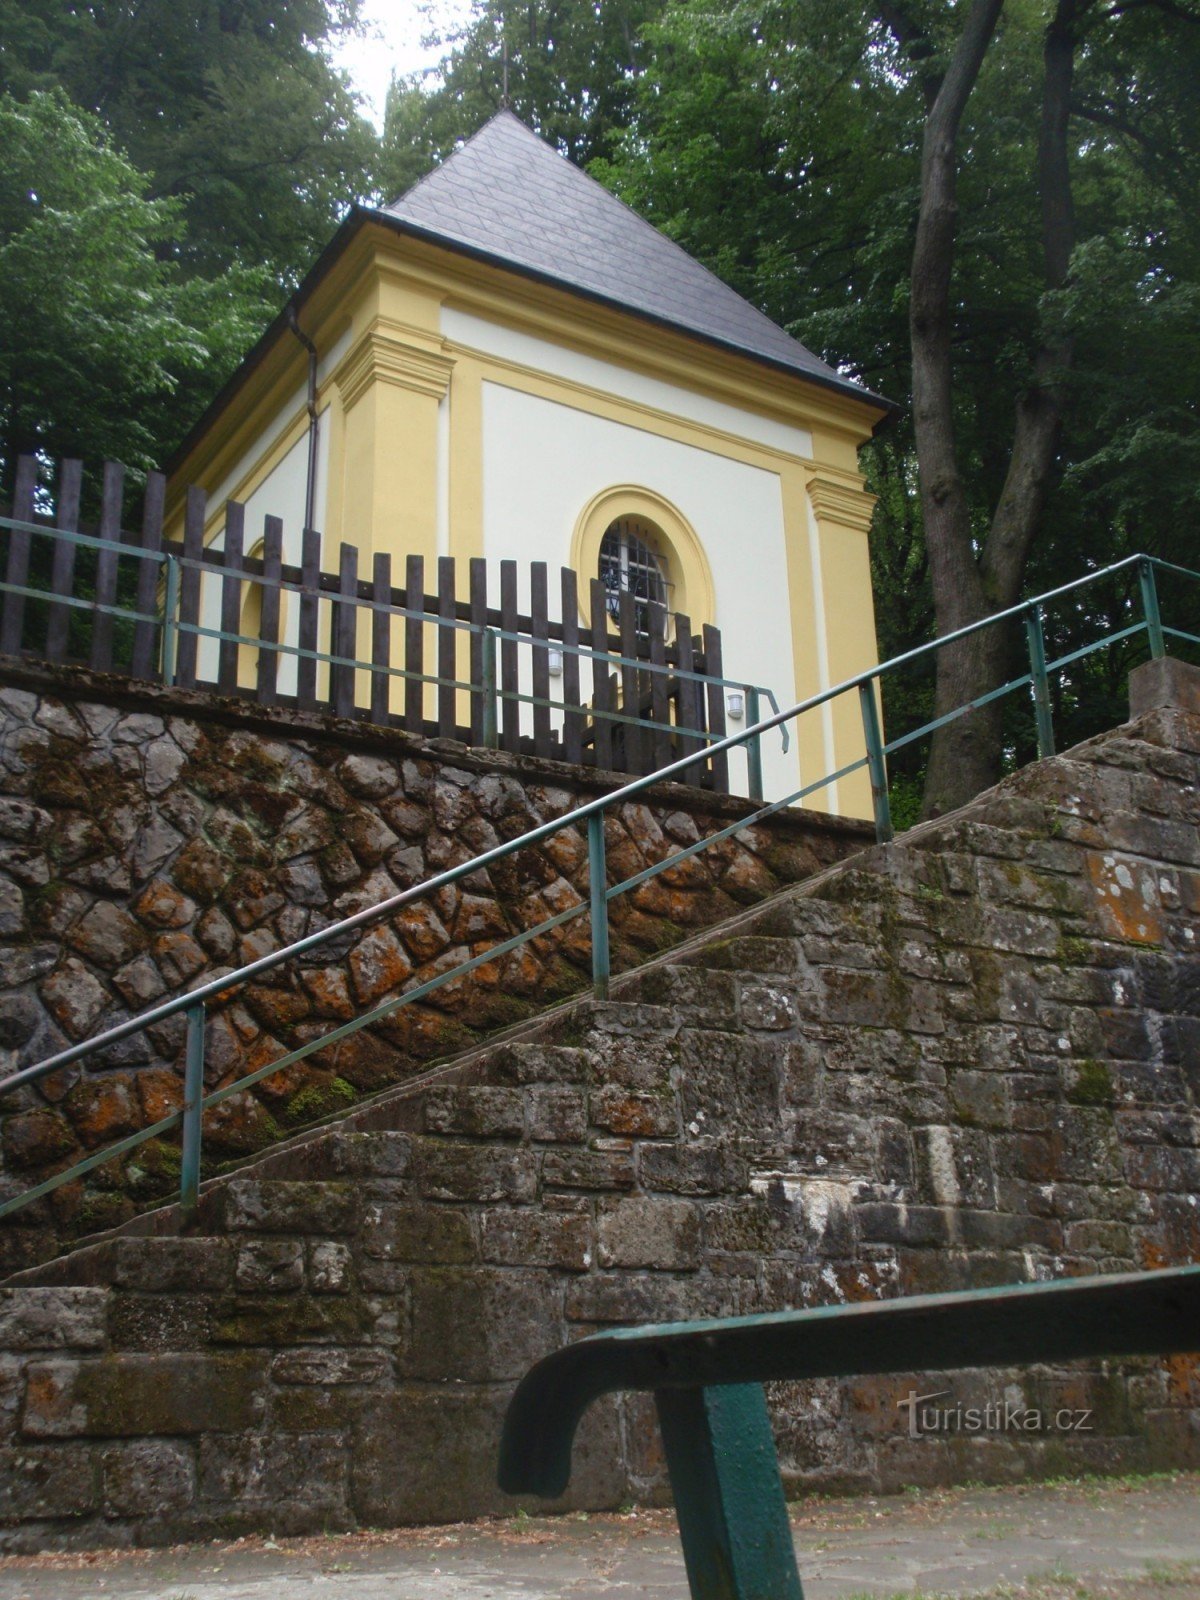 Hostýn - Water Chapel